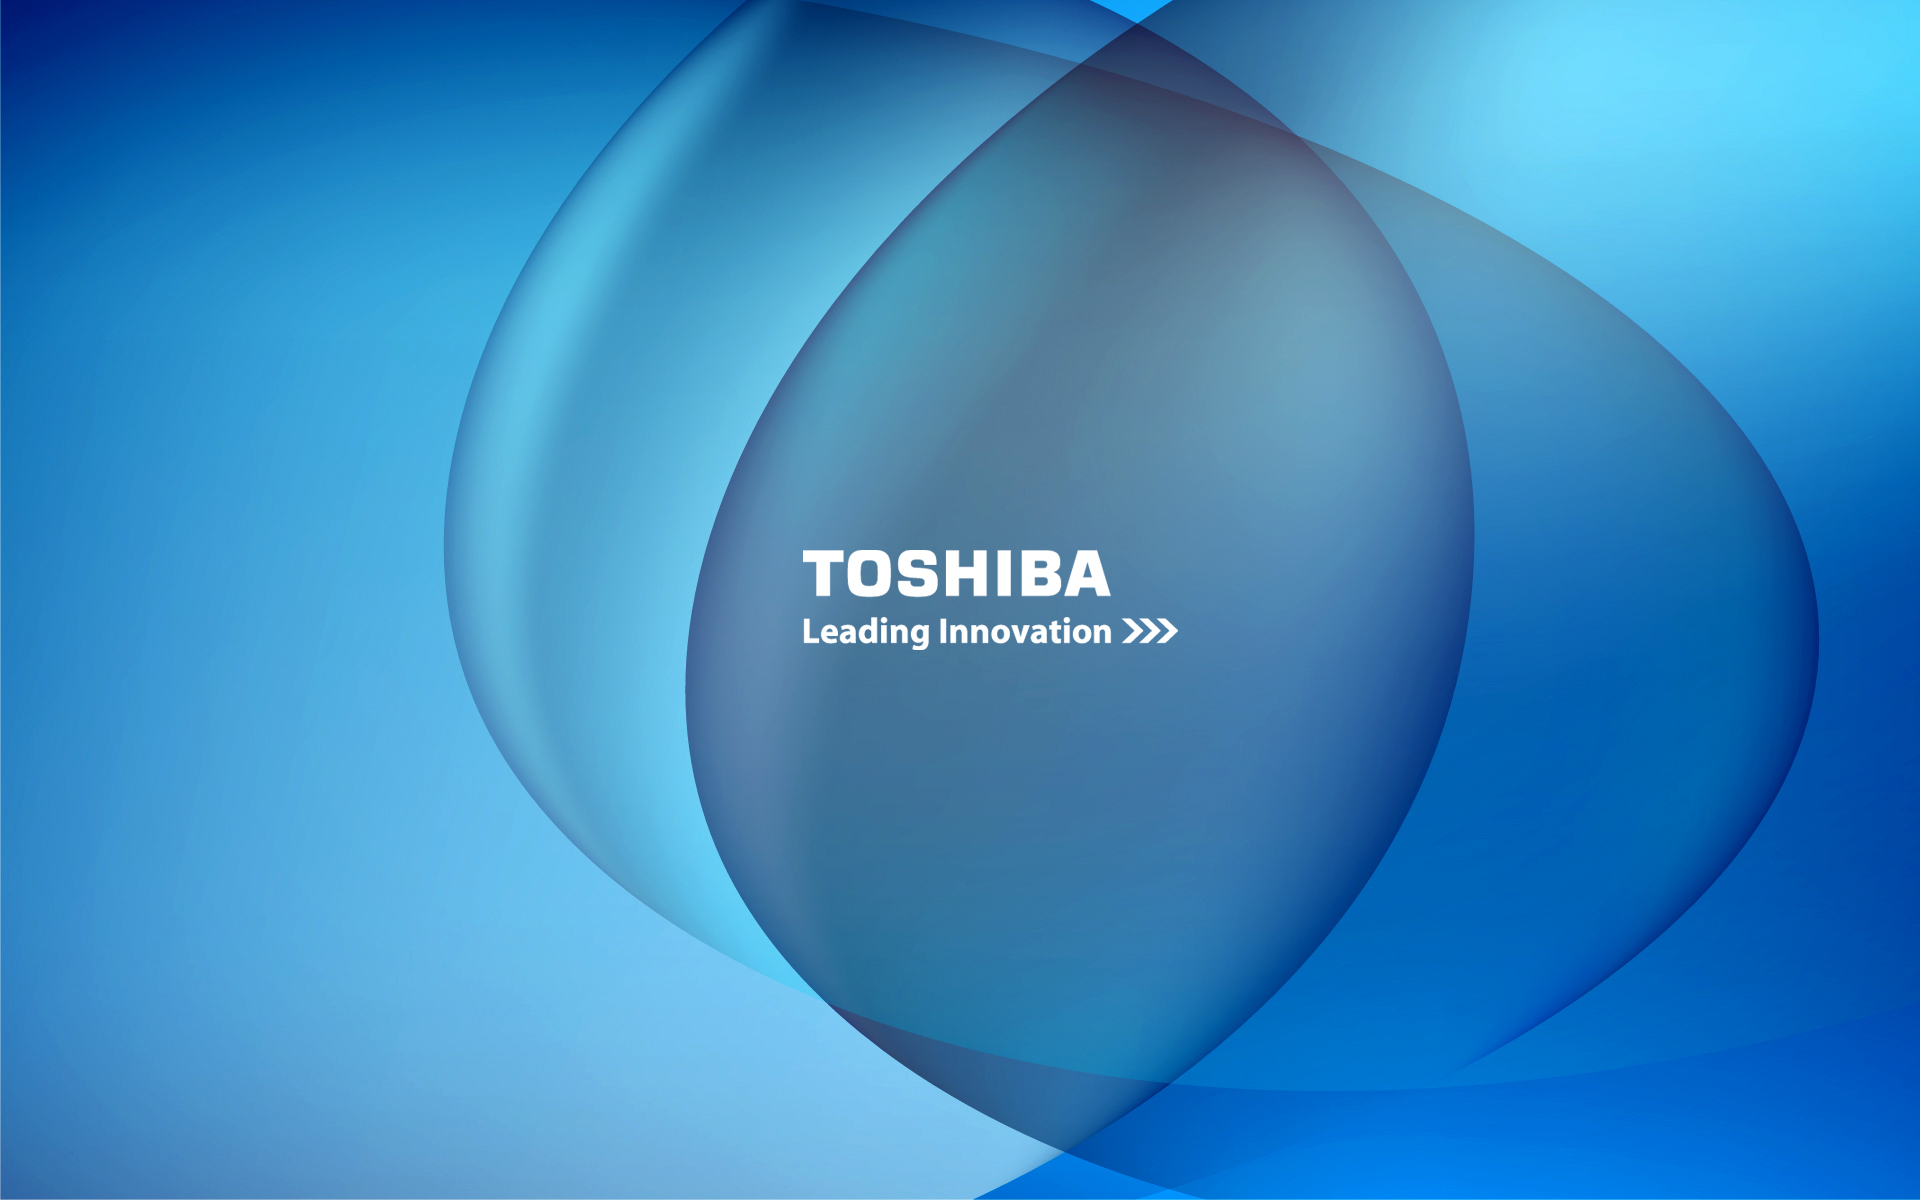 Hãy trang trí cho màn hình máy tính Toshiba của bạn với những phông nền HD toàn màn hình đẹp mắt, nổi bật và đầy phong cách. Với những ý tưởng phông nền HD này, bạn sẽ có thể tạo nên một màn hình độc đáo, đẹp mắt và sang trọng. Hãy tìm kiếm ngay những phông nền HD tuyệt đẹp nhất để trang trí cho màn hình của mình!